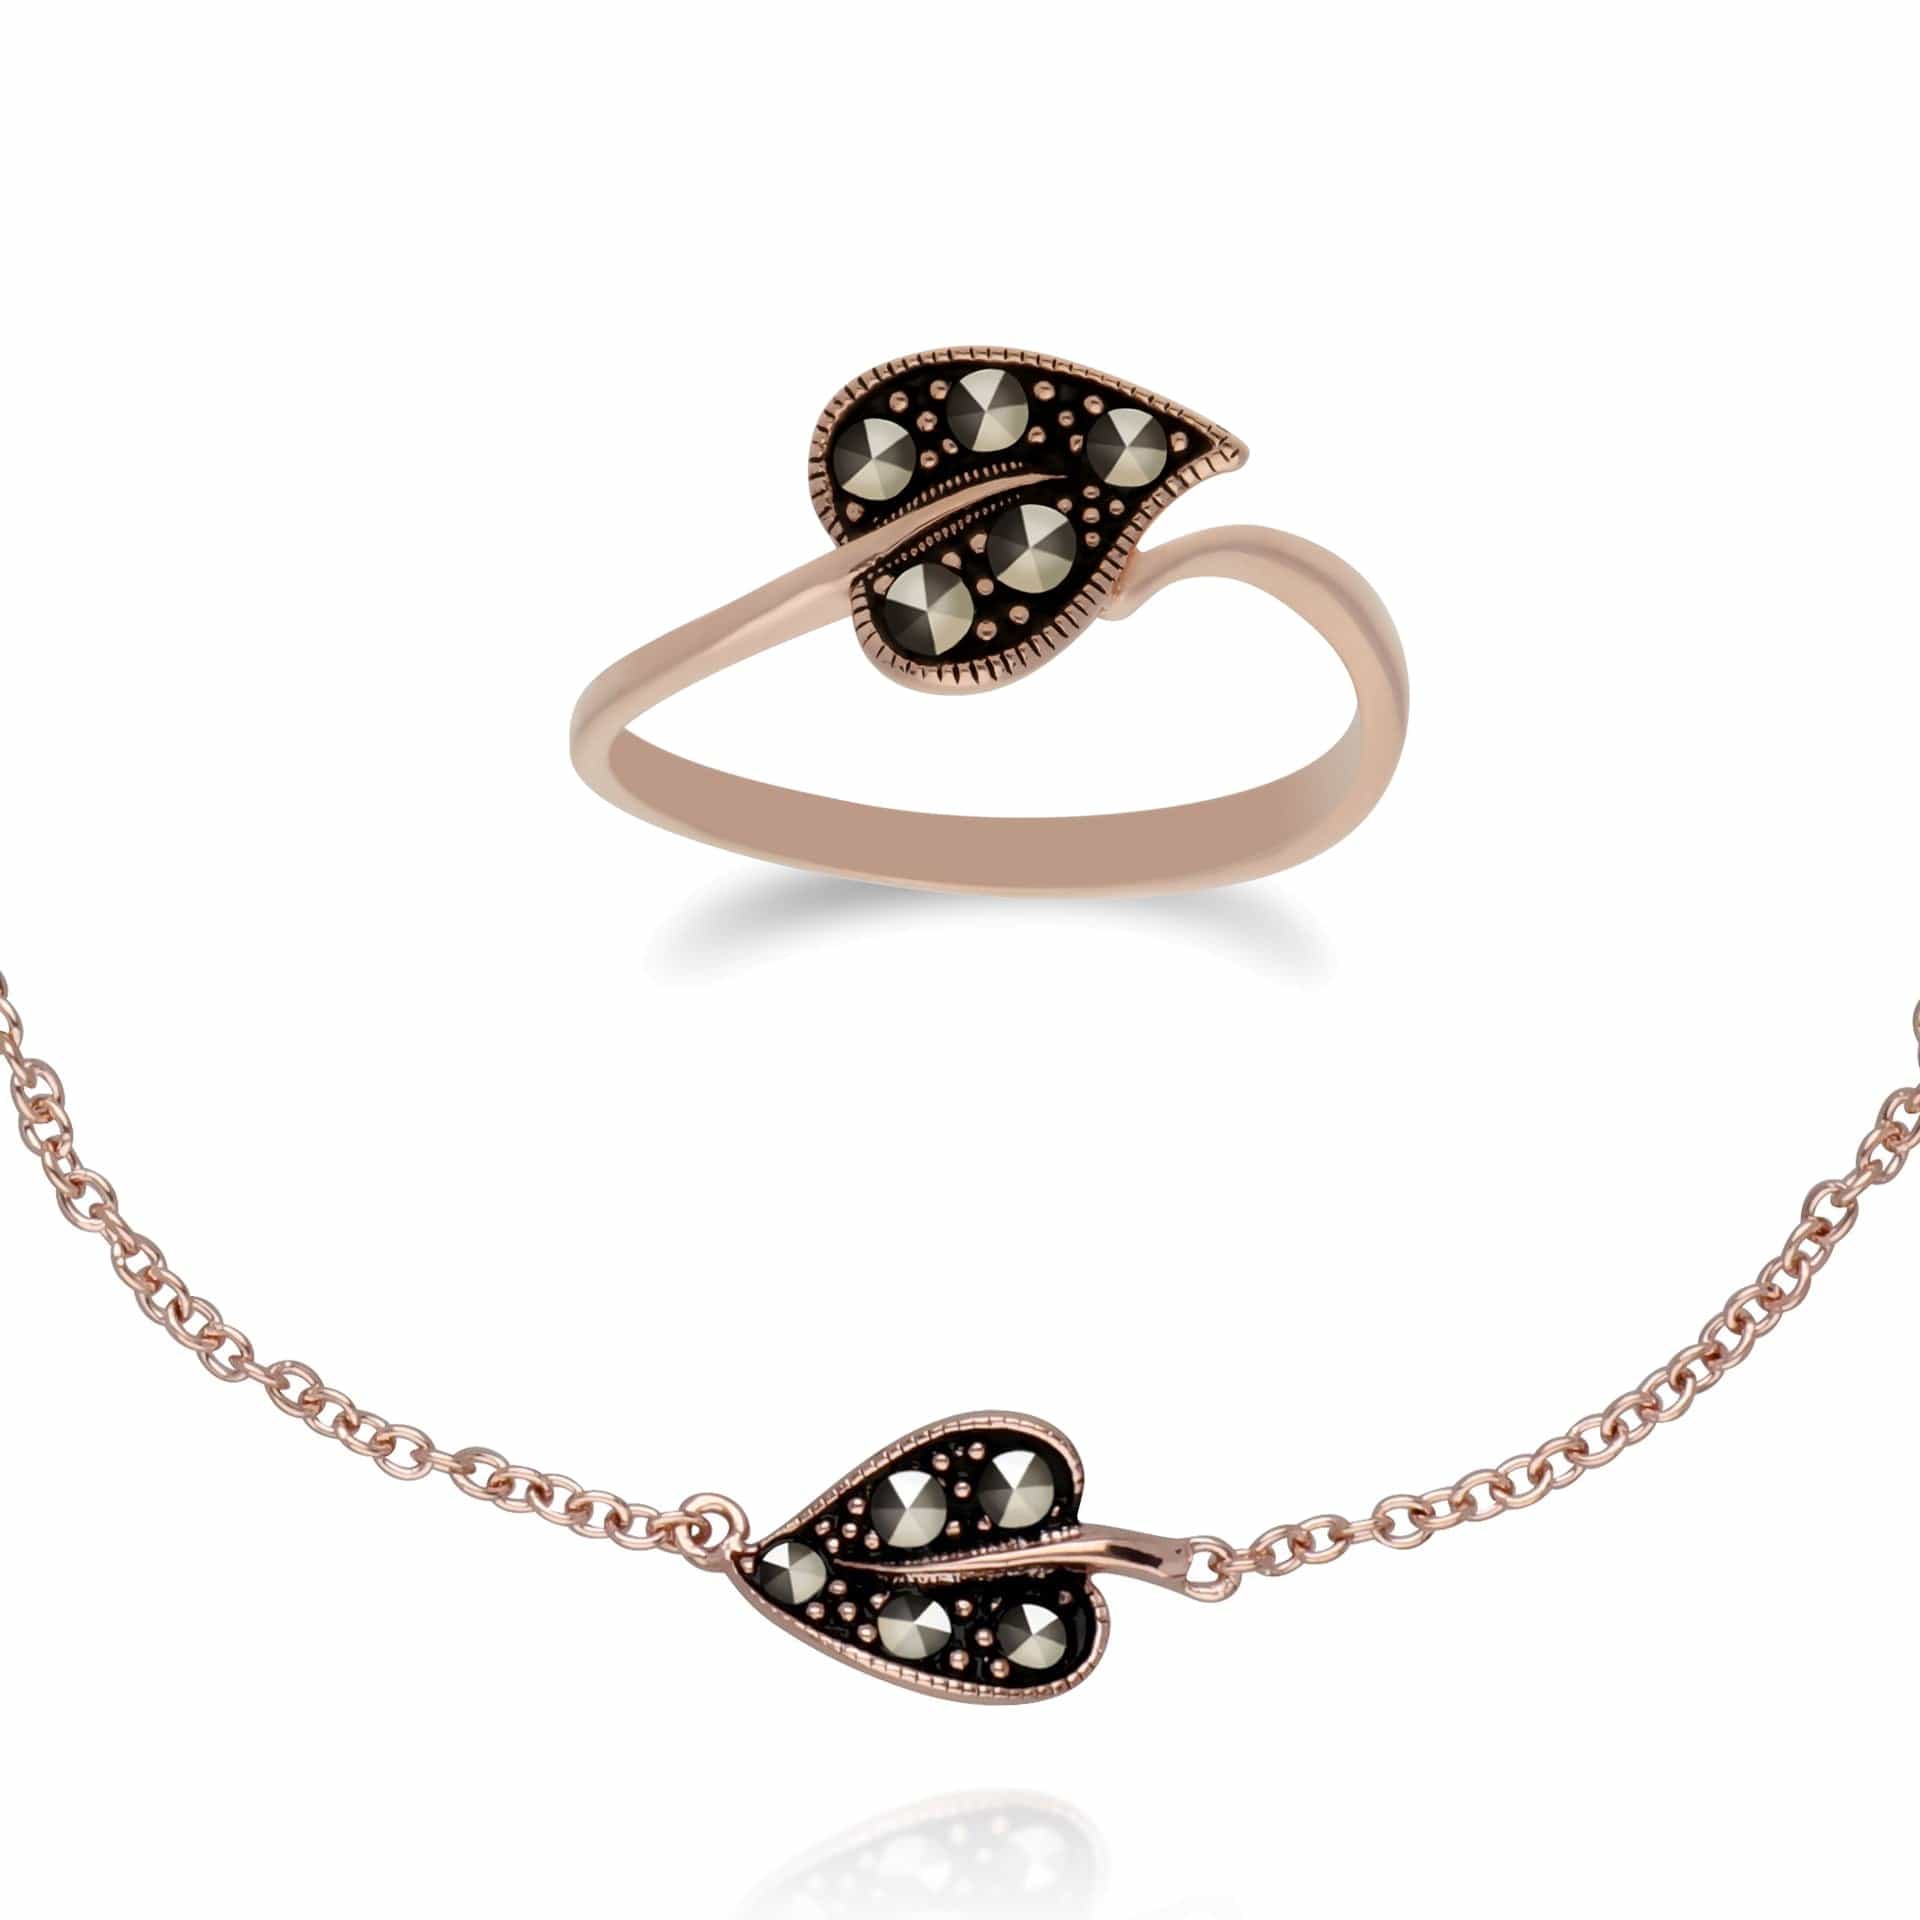 224L007301925-224R030501925 Rose Gold Plated Silver  Marcasite Leaf Ring & Bracelet Set 1